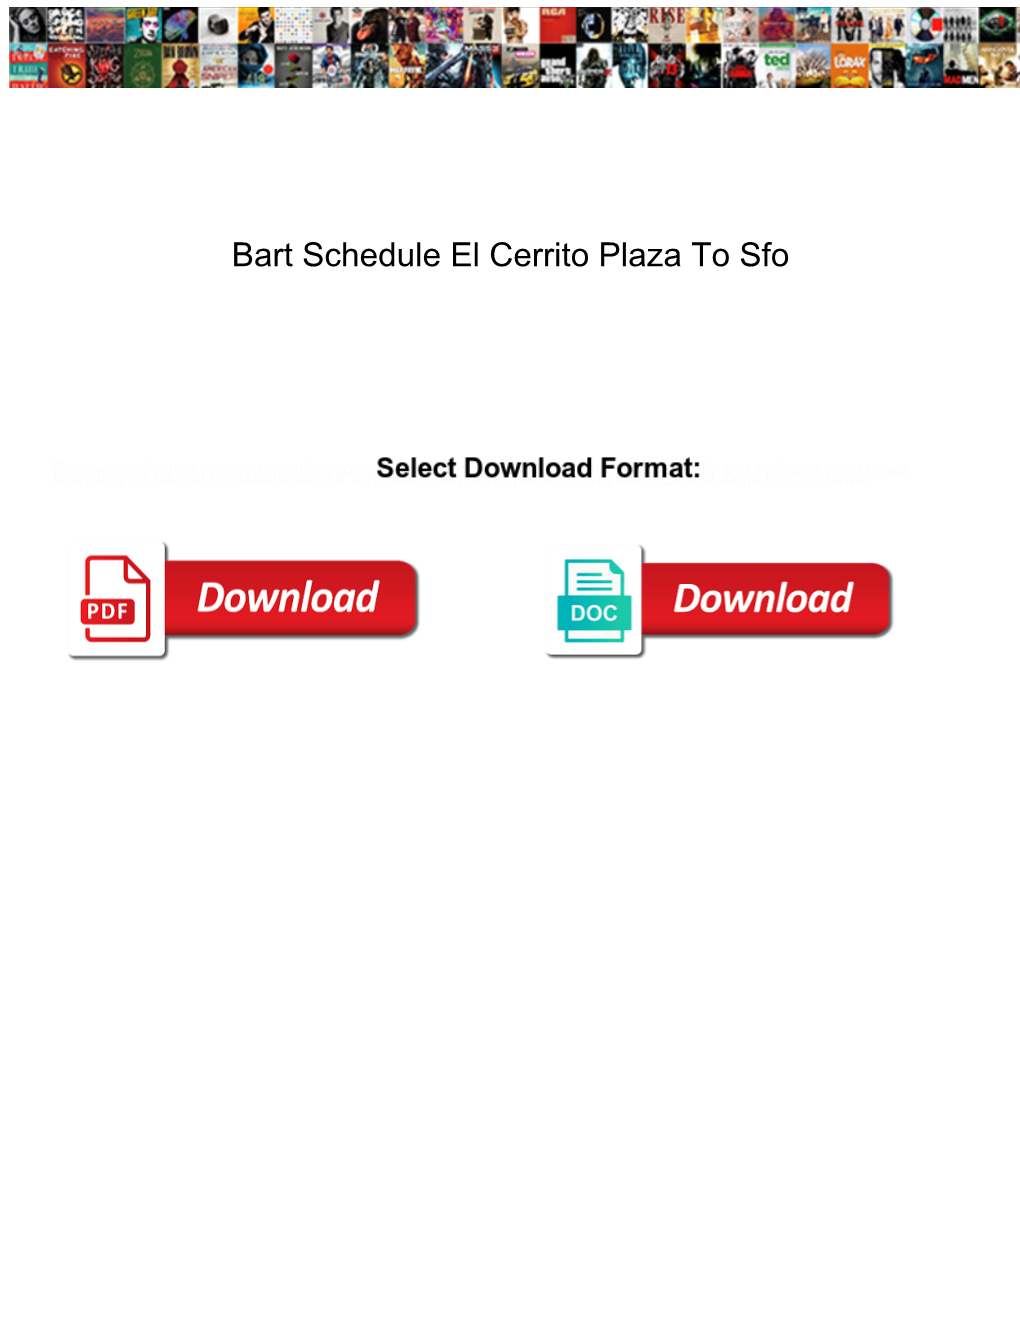 Bart Schedule El Cerrito Plaza to Sfo